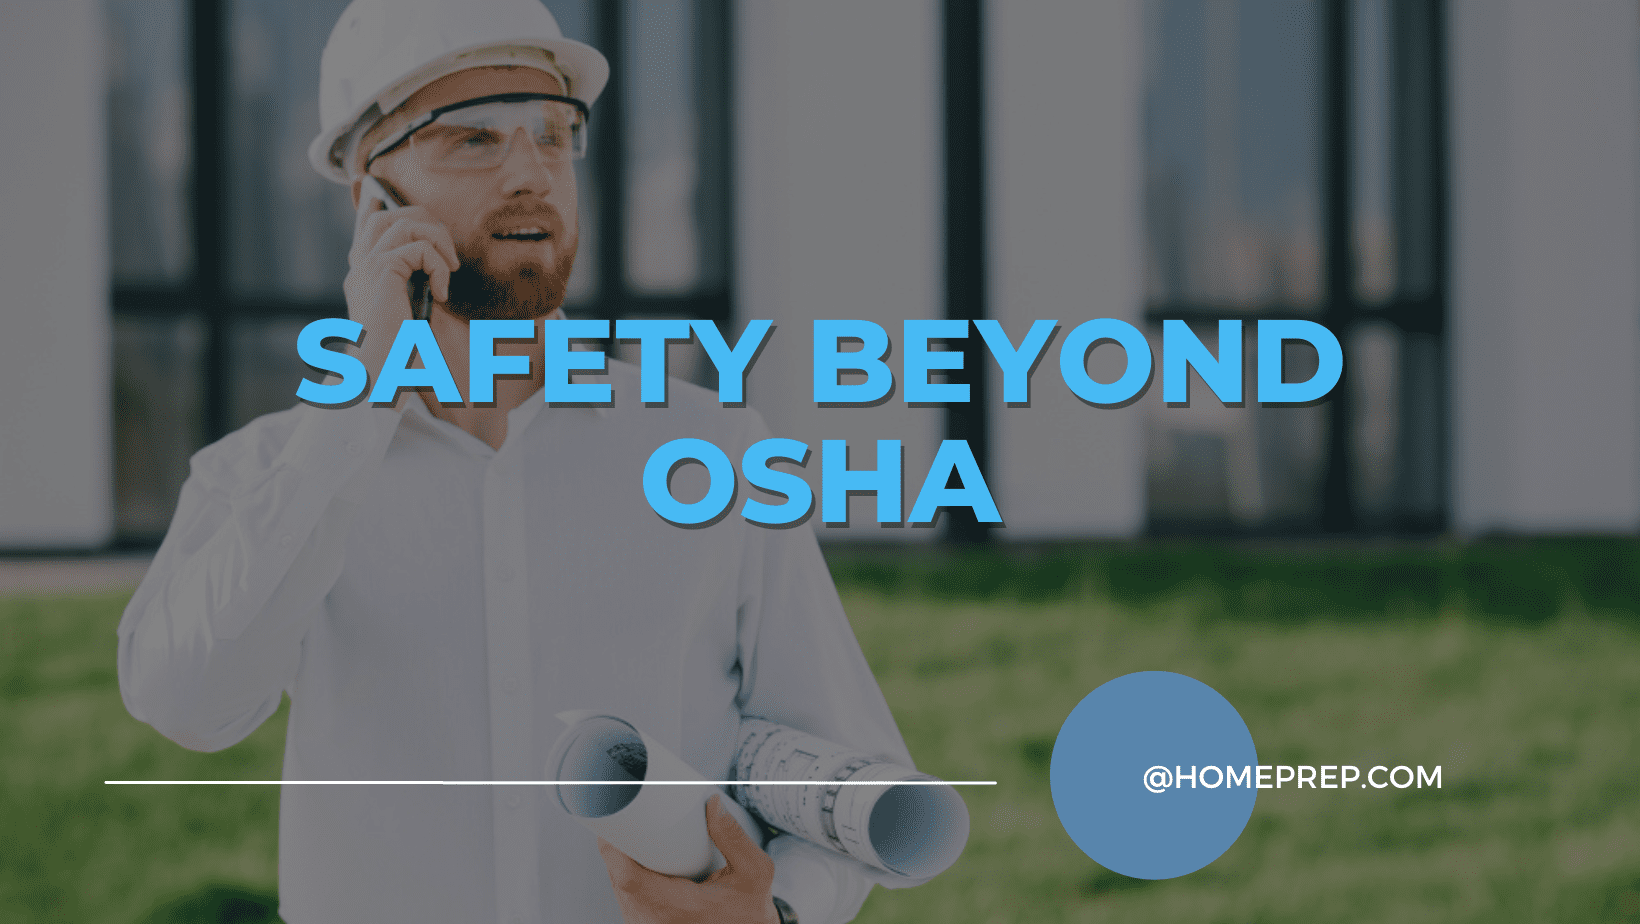 Safety Beyond OSHA: @HomePrep’s Advanced Safety Training